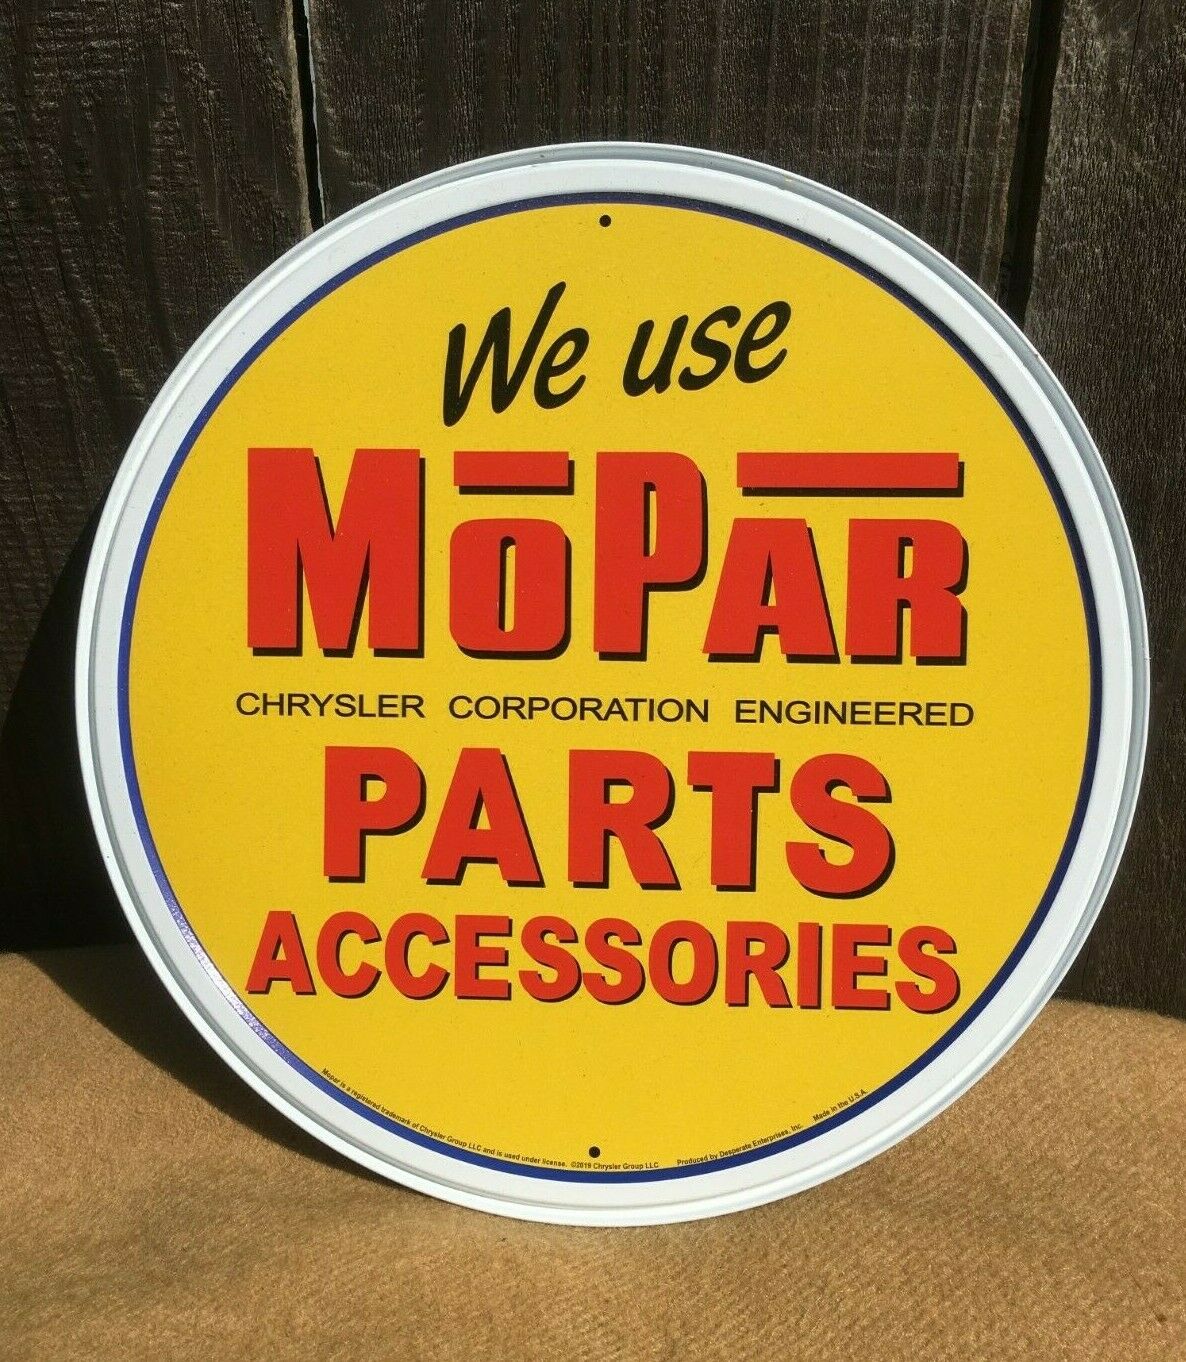 We Use Mopar Parts Accessories Tin Metal Sign Rustic Auto Shop Retro Classic